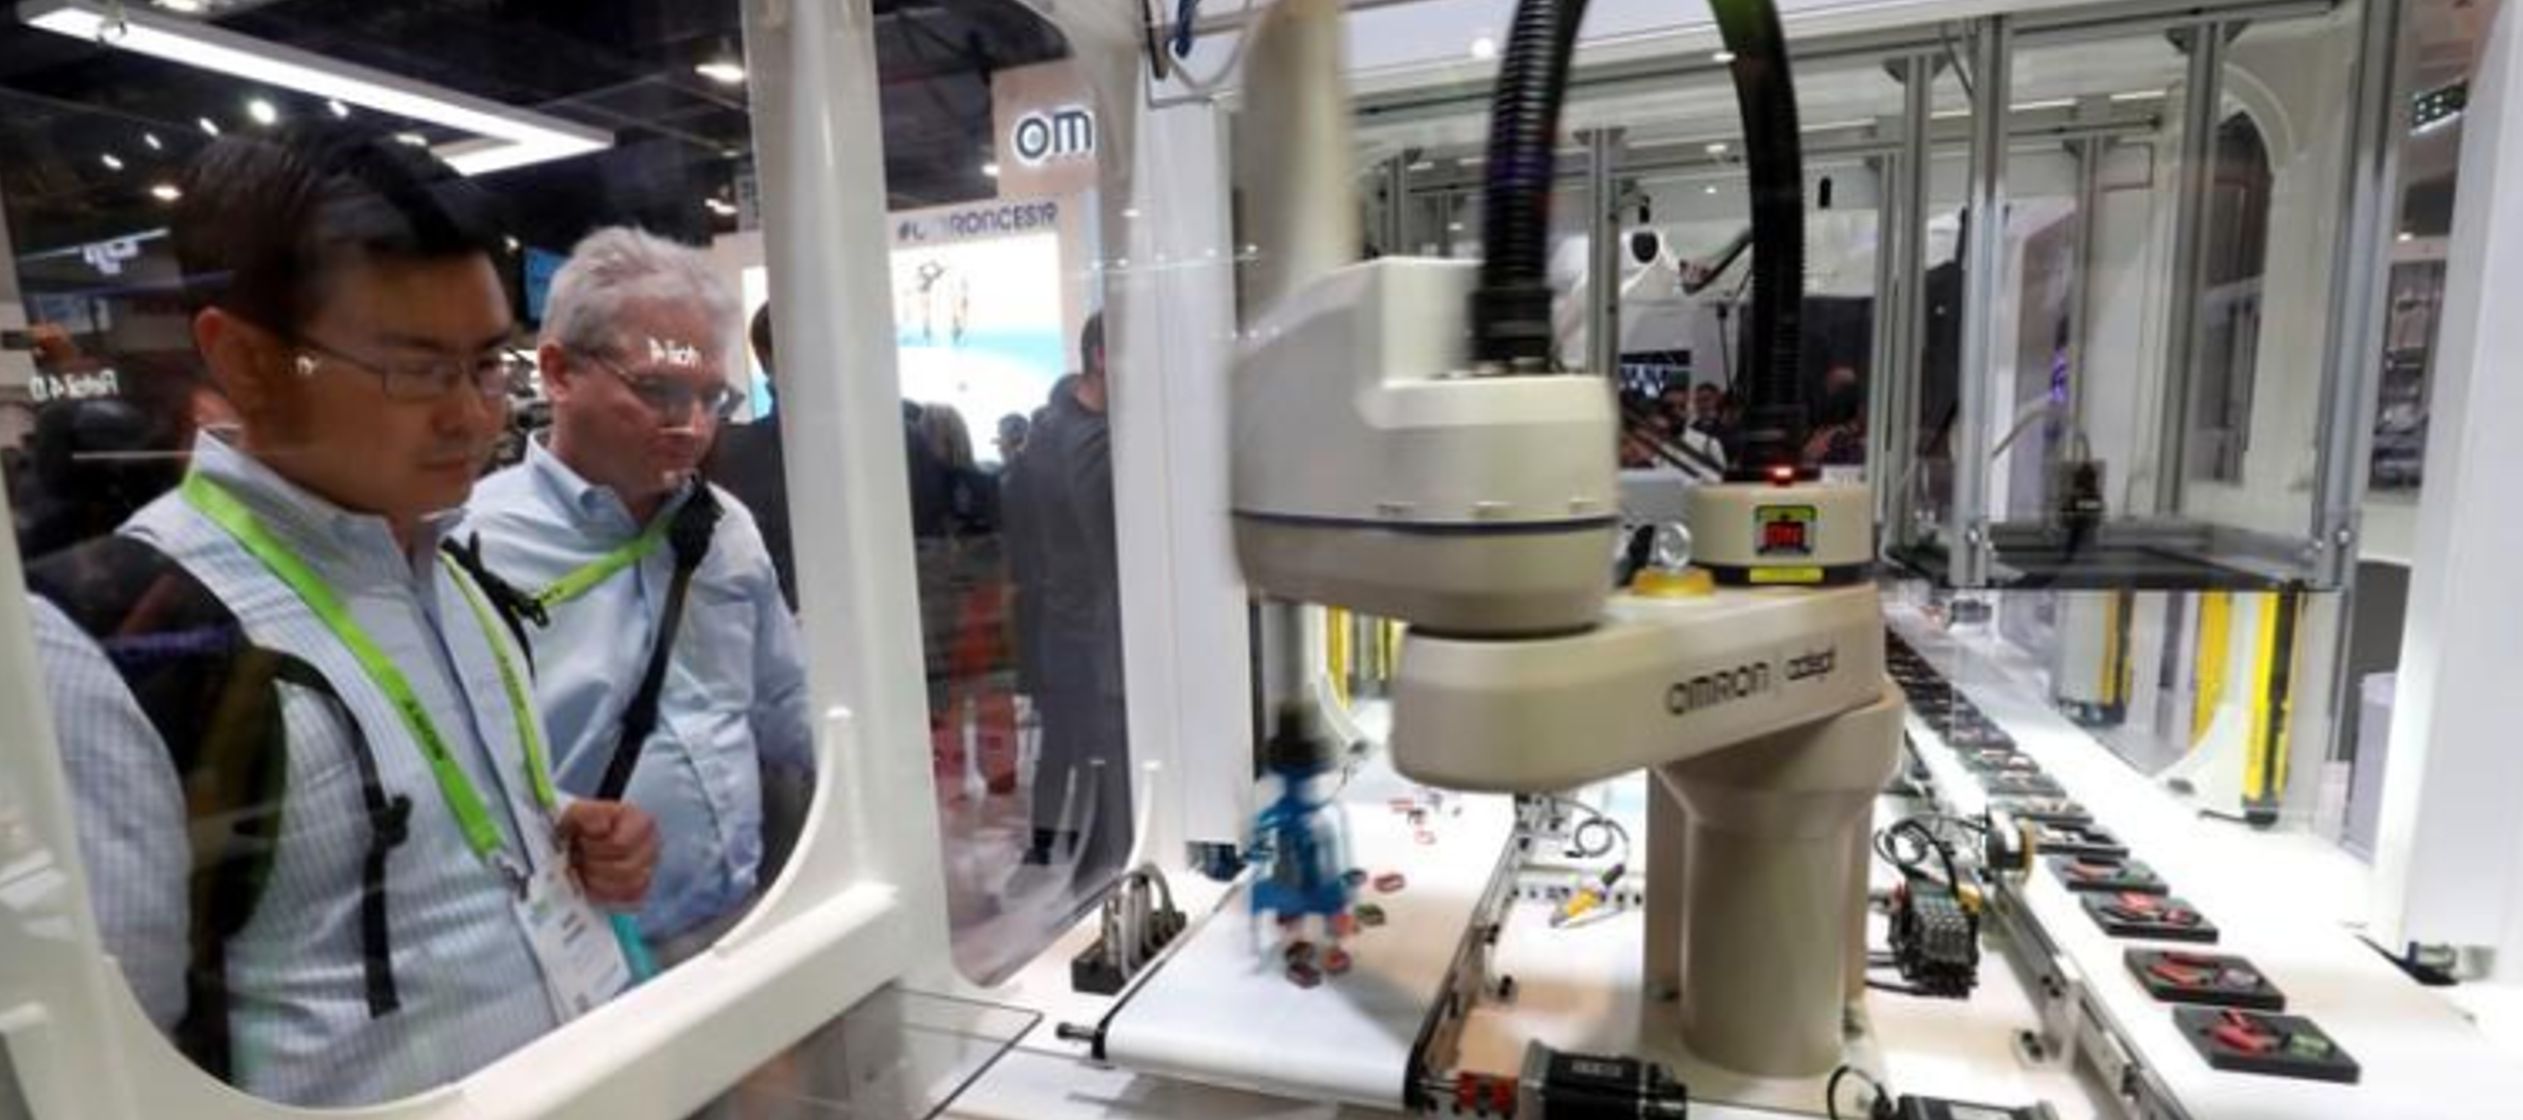 Para 2020 habrá más de 3 millones de robots industriales en uso en fábricas de...